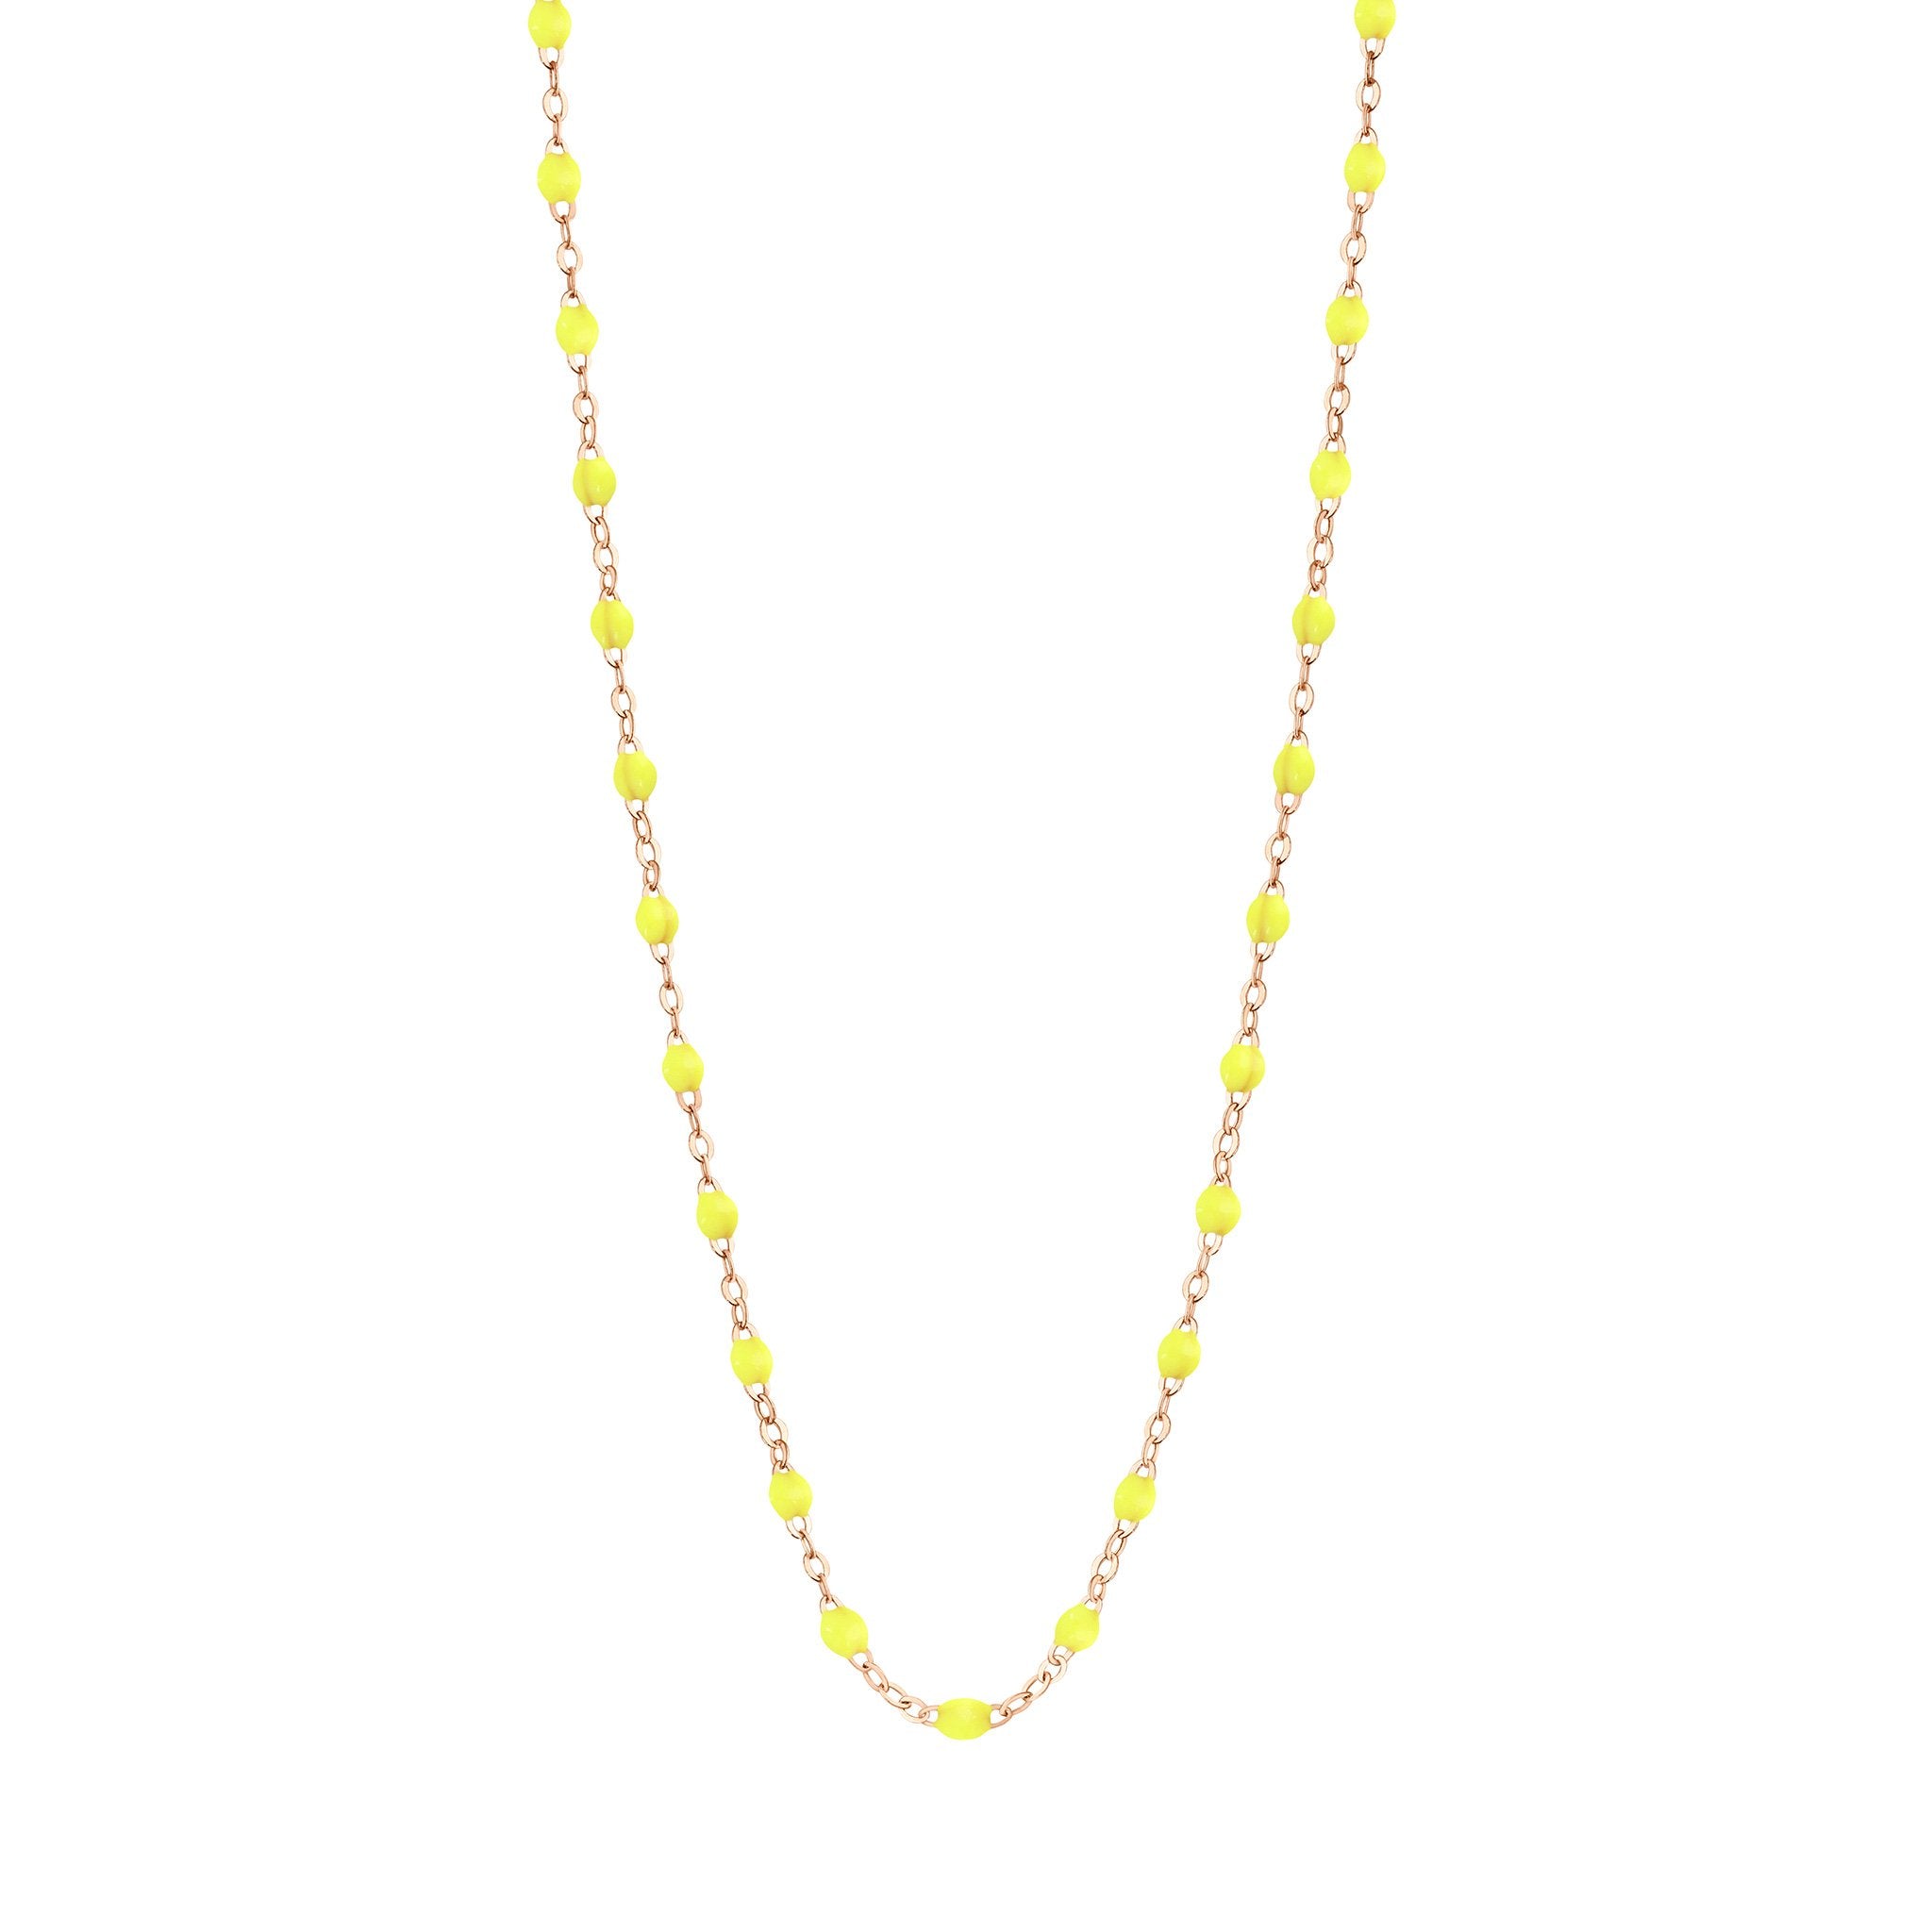 Collier jaune fluo Classique Gigi, or rose, 45 cm classique gigi Référence :  b1gi001r1845xx -1